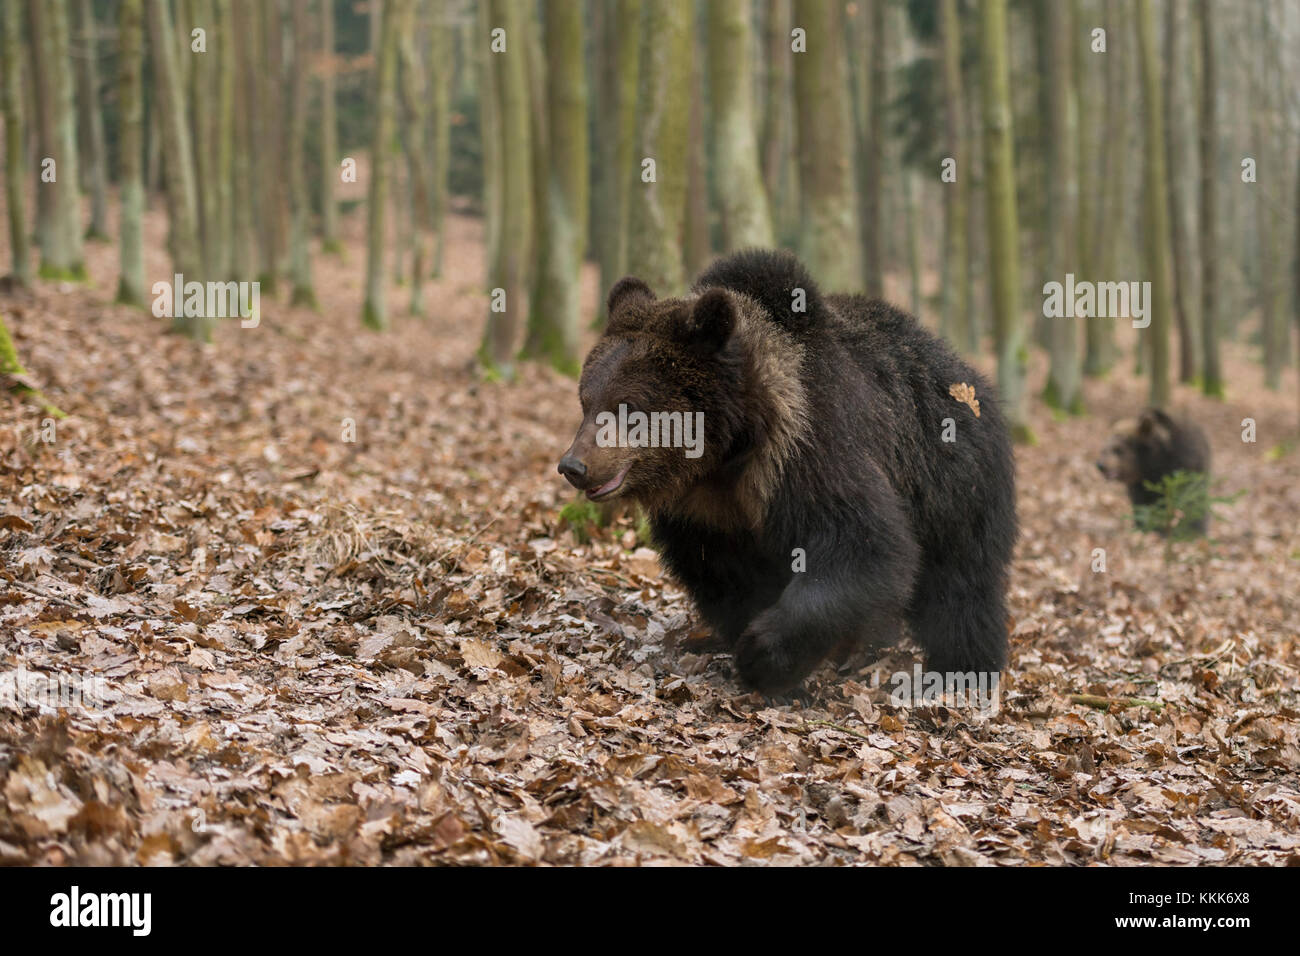 Europäische Braunbären / Europäische Braunbären ( Ursus arctos ), junge Erwachsene, die durch herbstliche Wälder wandern, Europa. Stockfoto